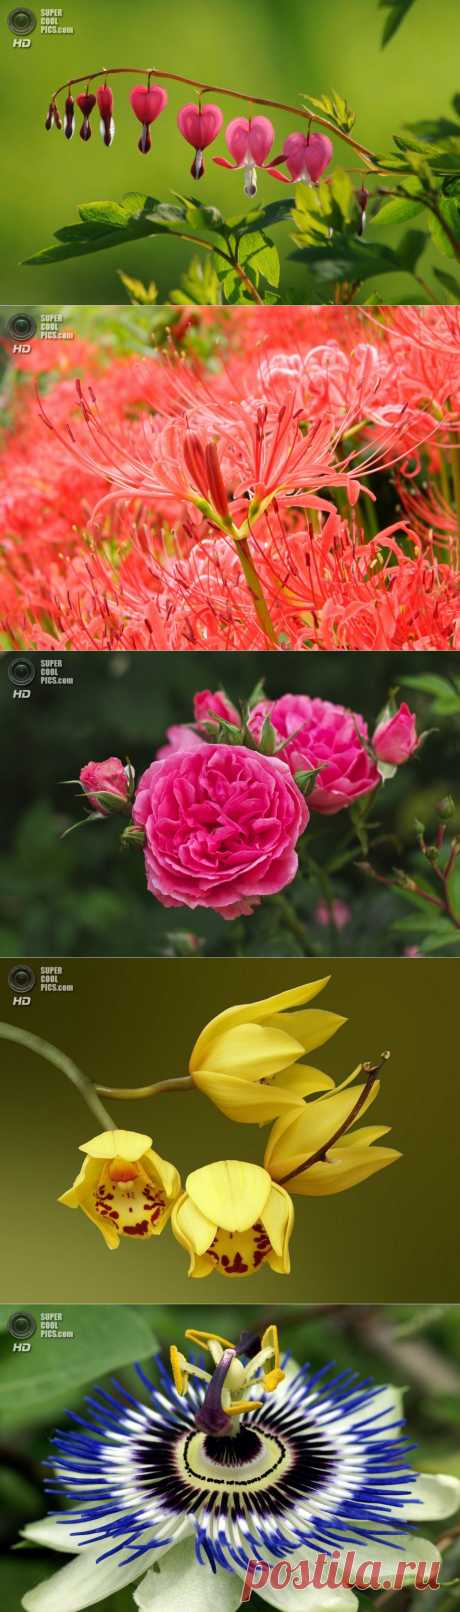 Хит-парад цветов (10 фото) — SuperCoolPics